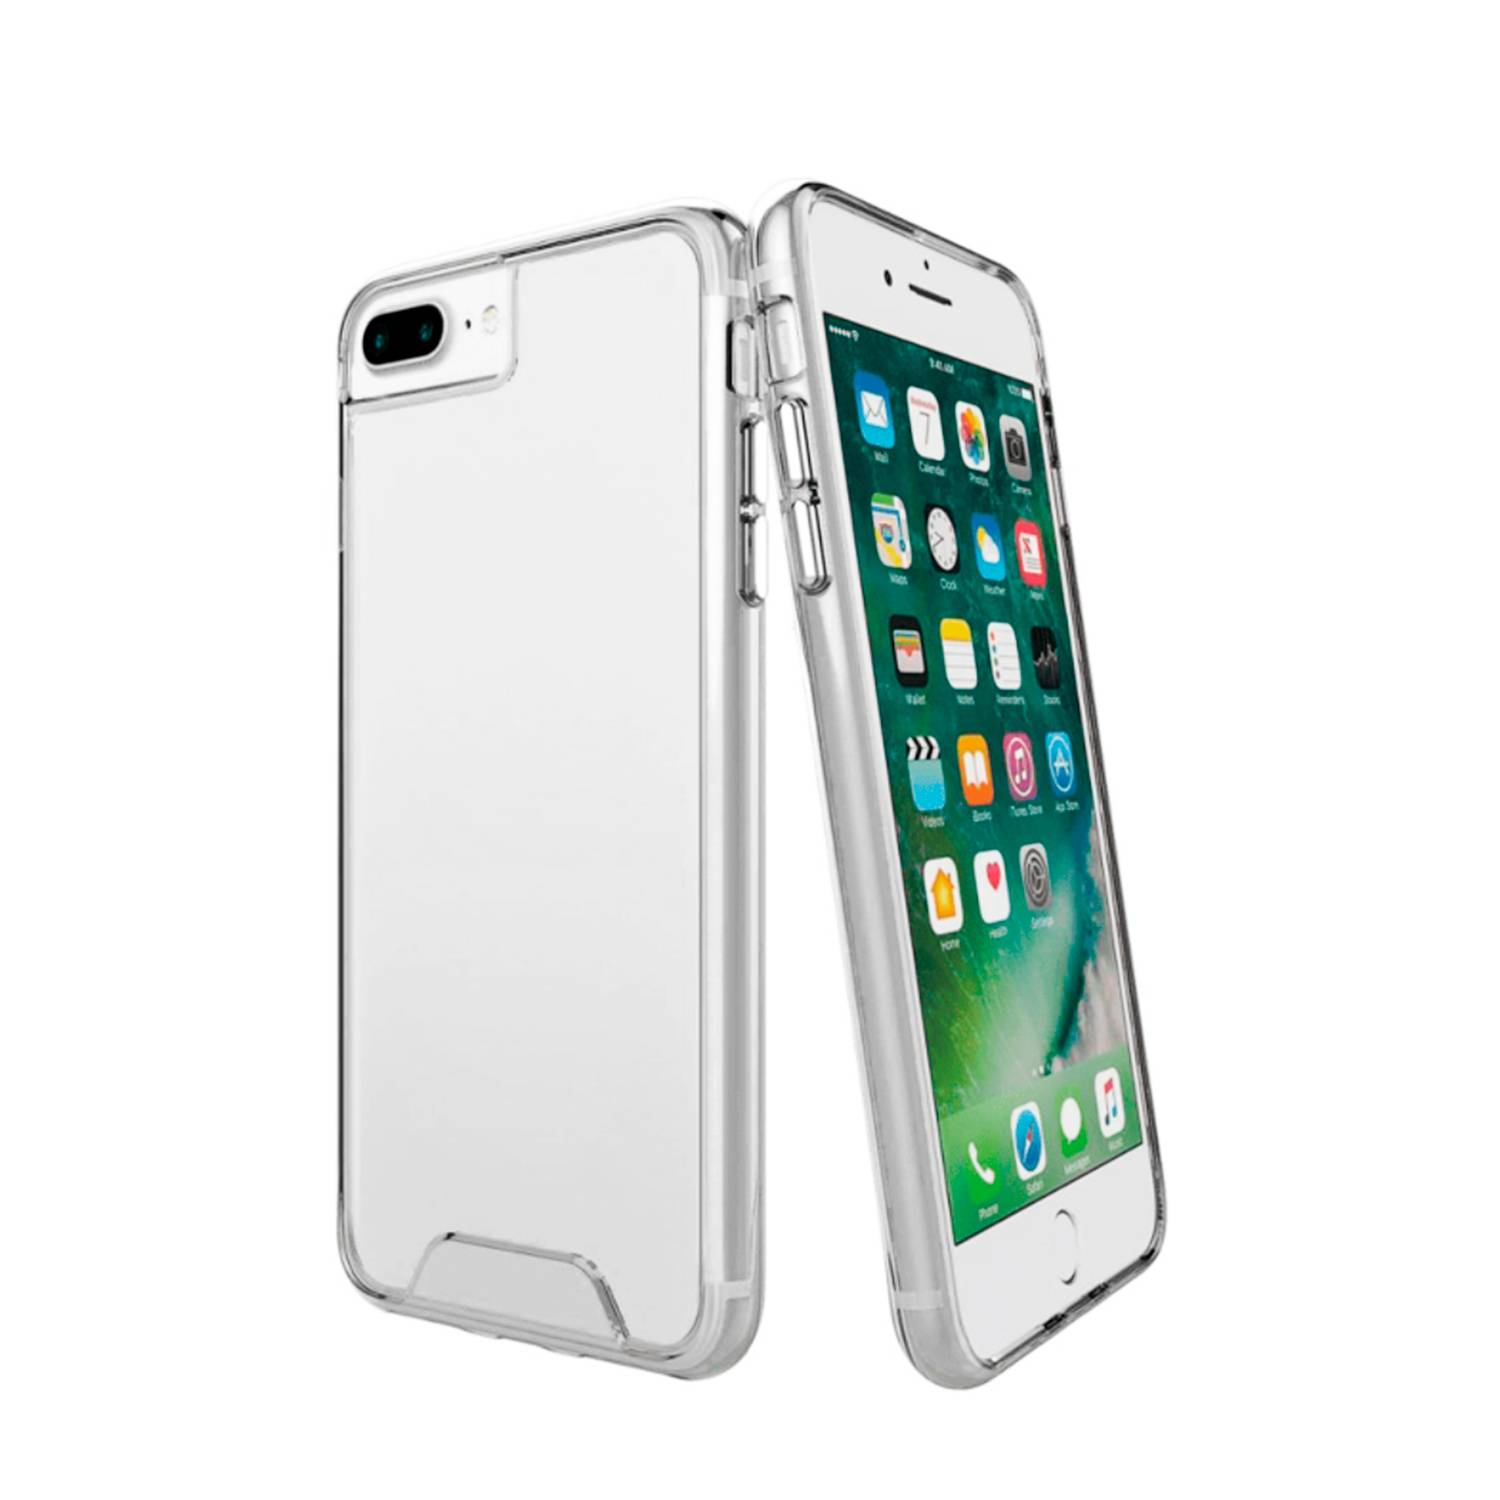 Carcasa Iphone 7 , Iphone 8 Doble Cara Transparente – Frontal